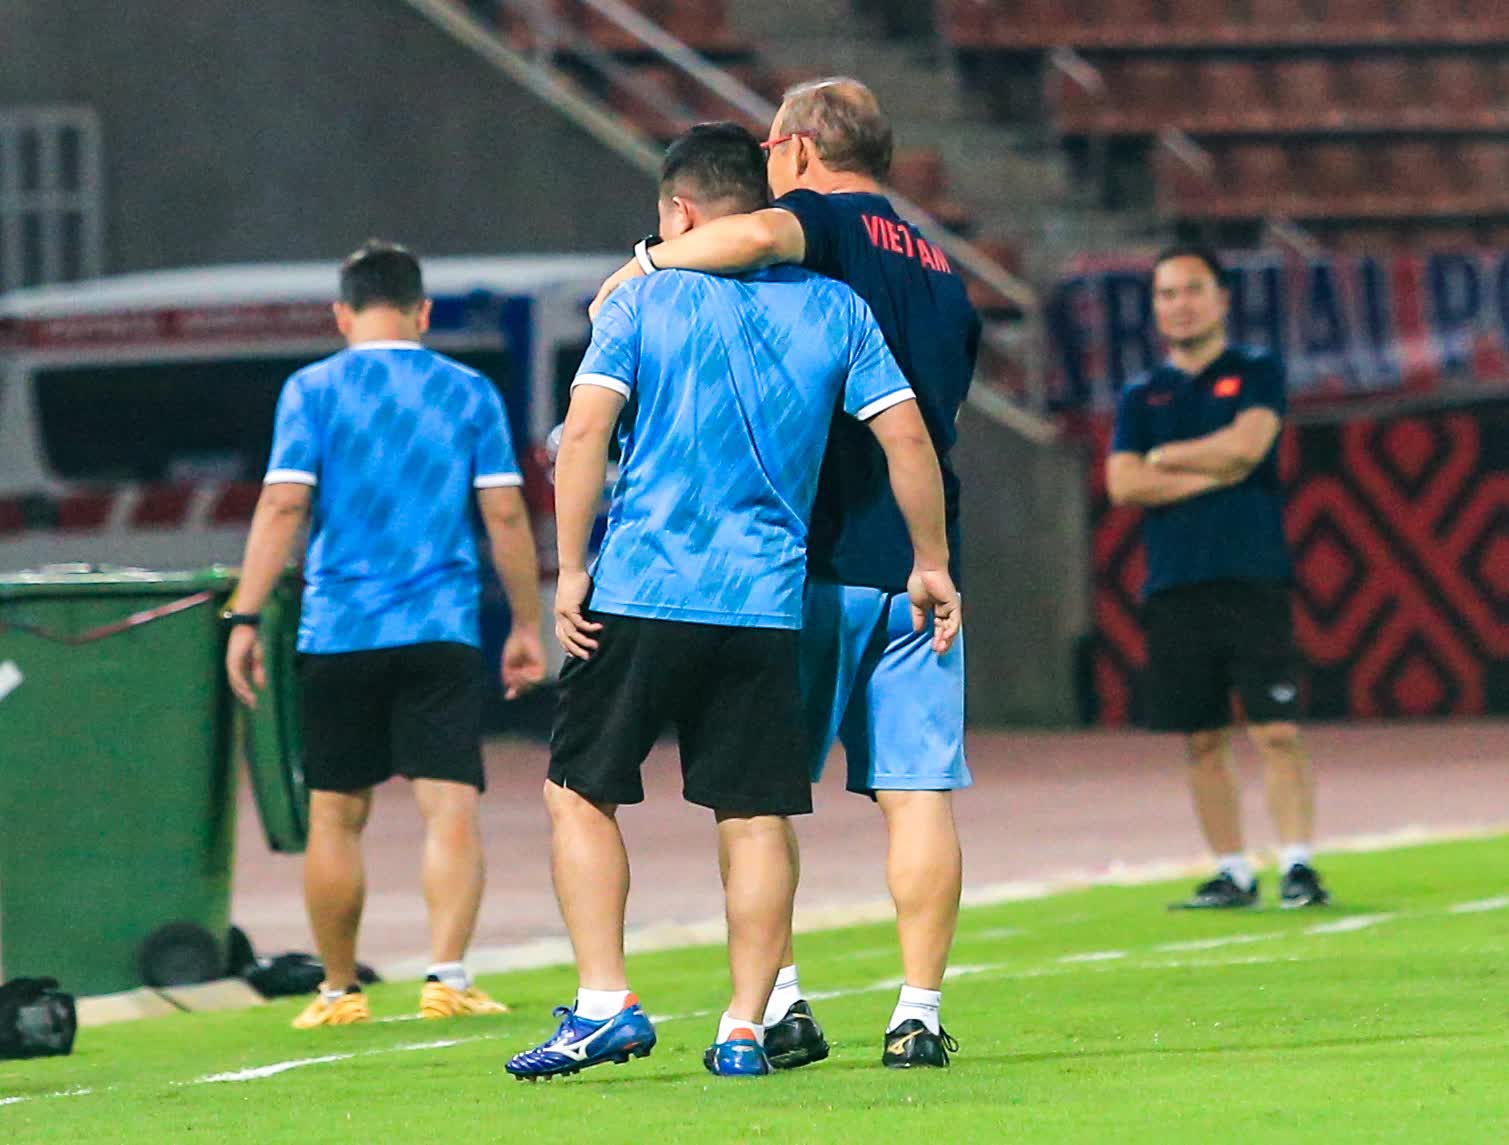 HLV Park Hang-seo ngáng chân trợ lý, kiểm tra mặt cỏ sân thi đấu với Thái Lan - Ảnh 5.